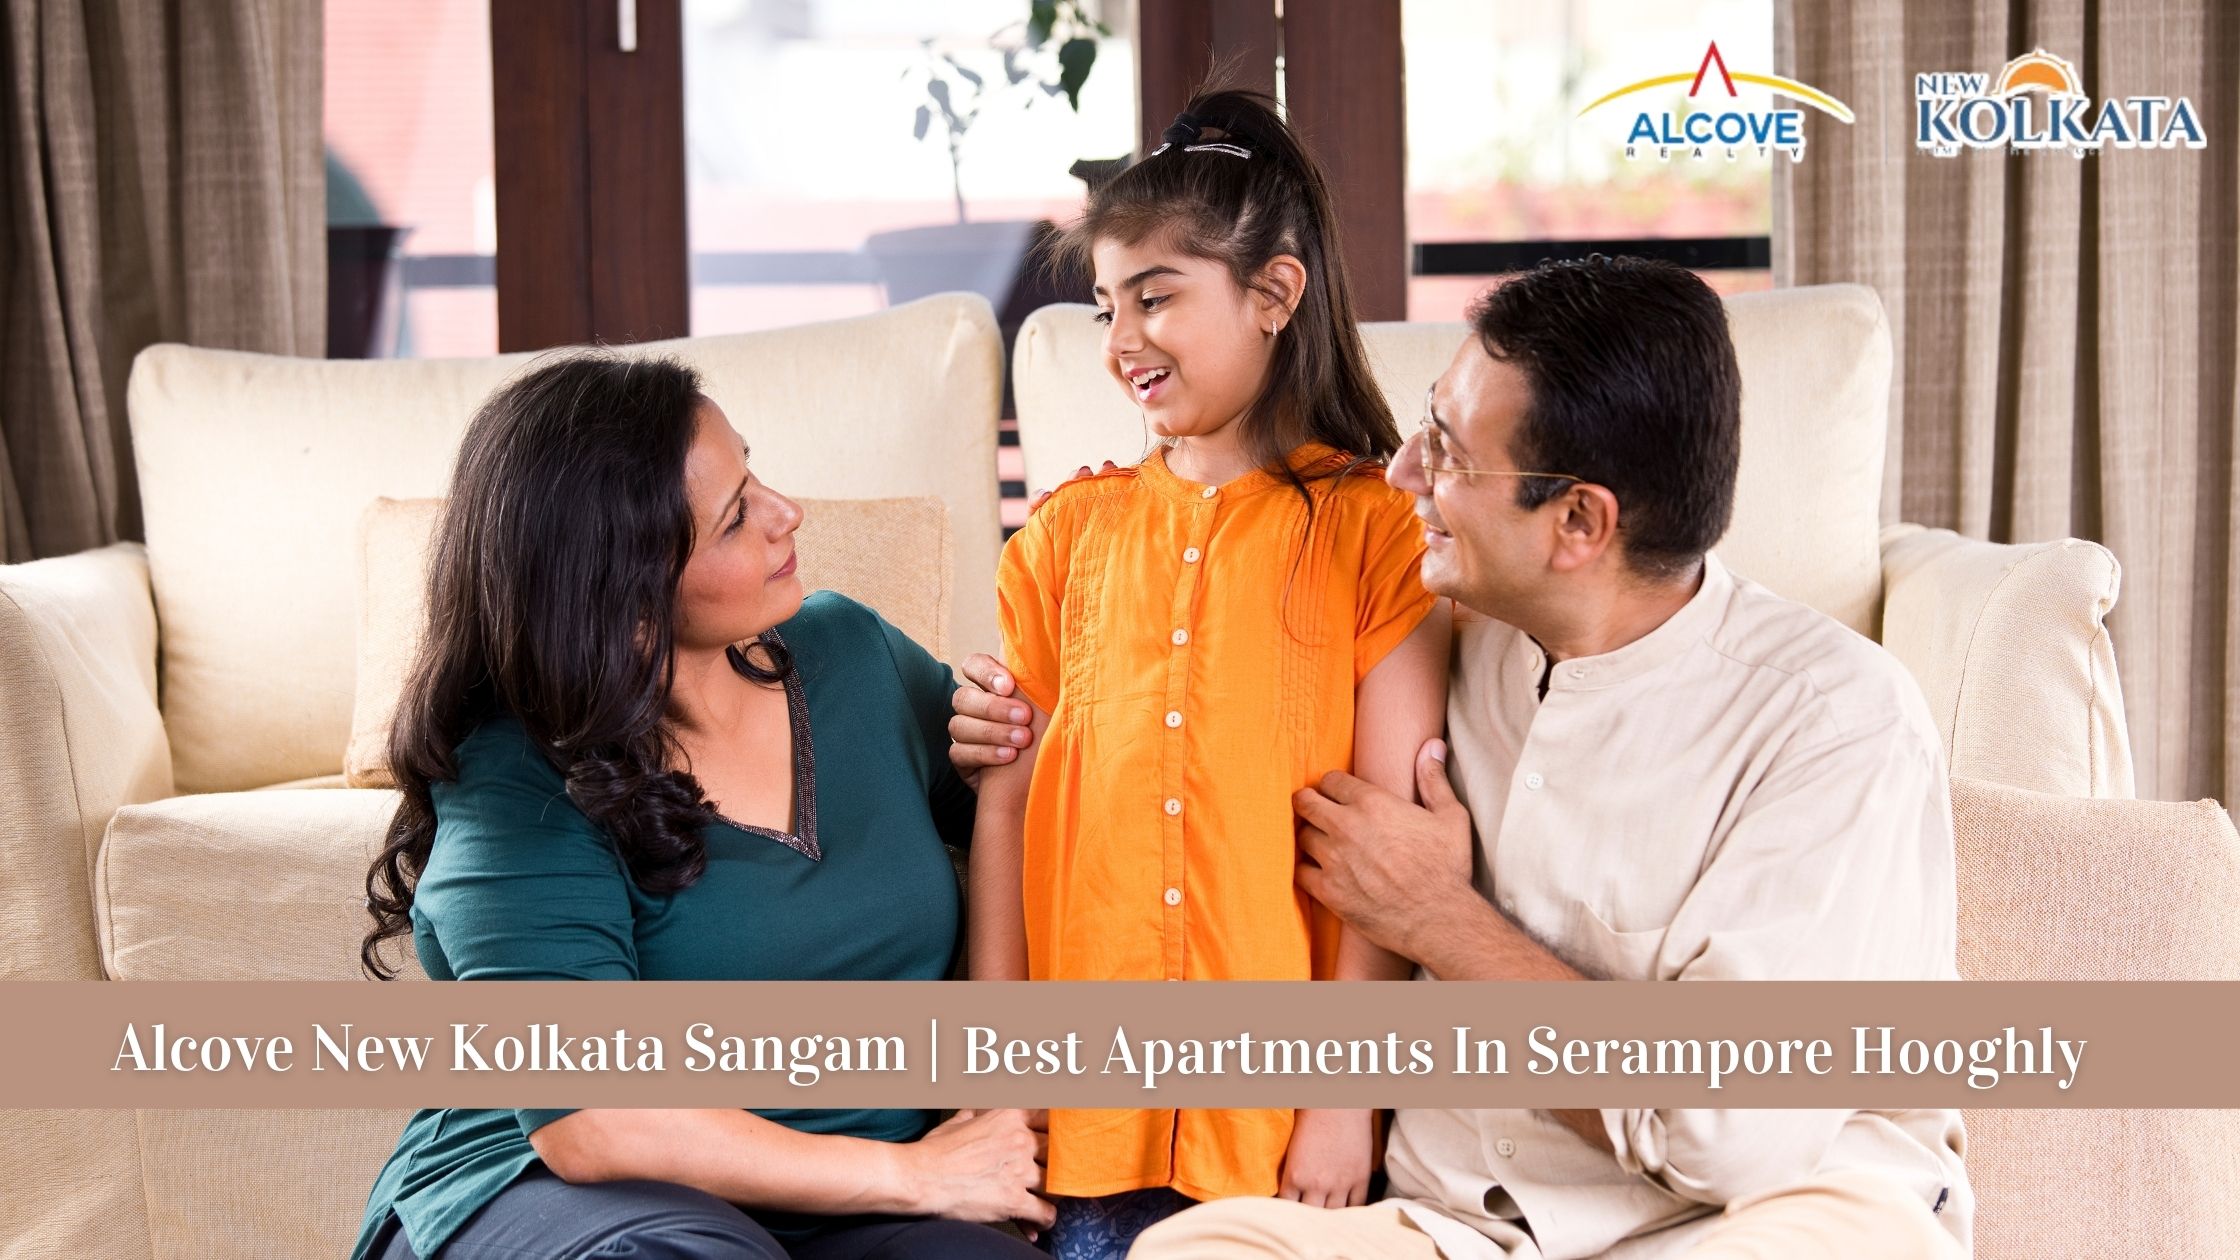 Best Apartments In Serampore